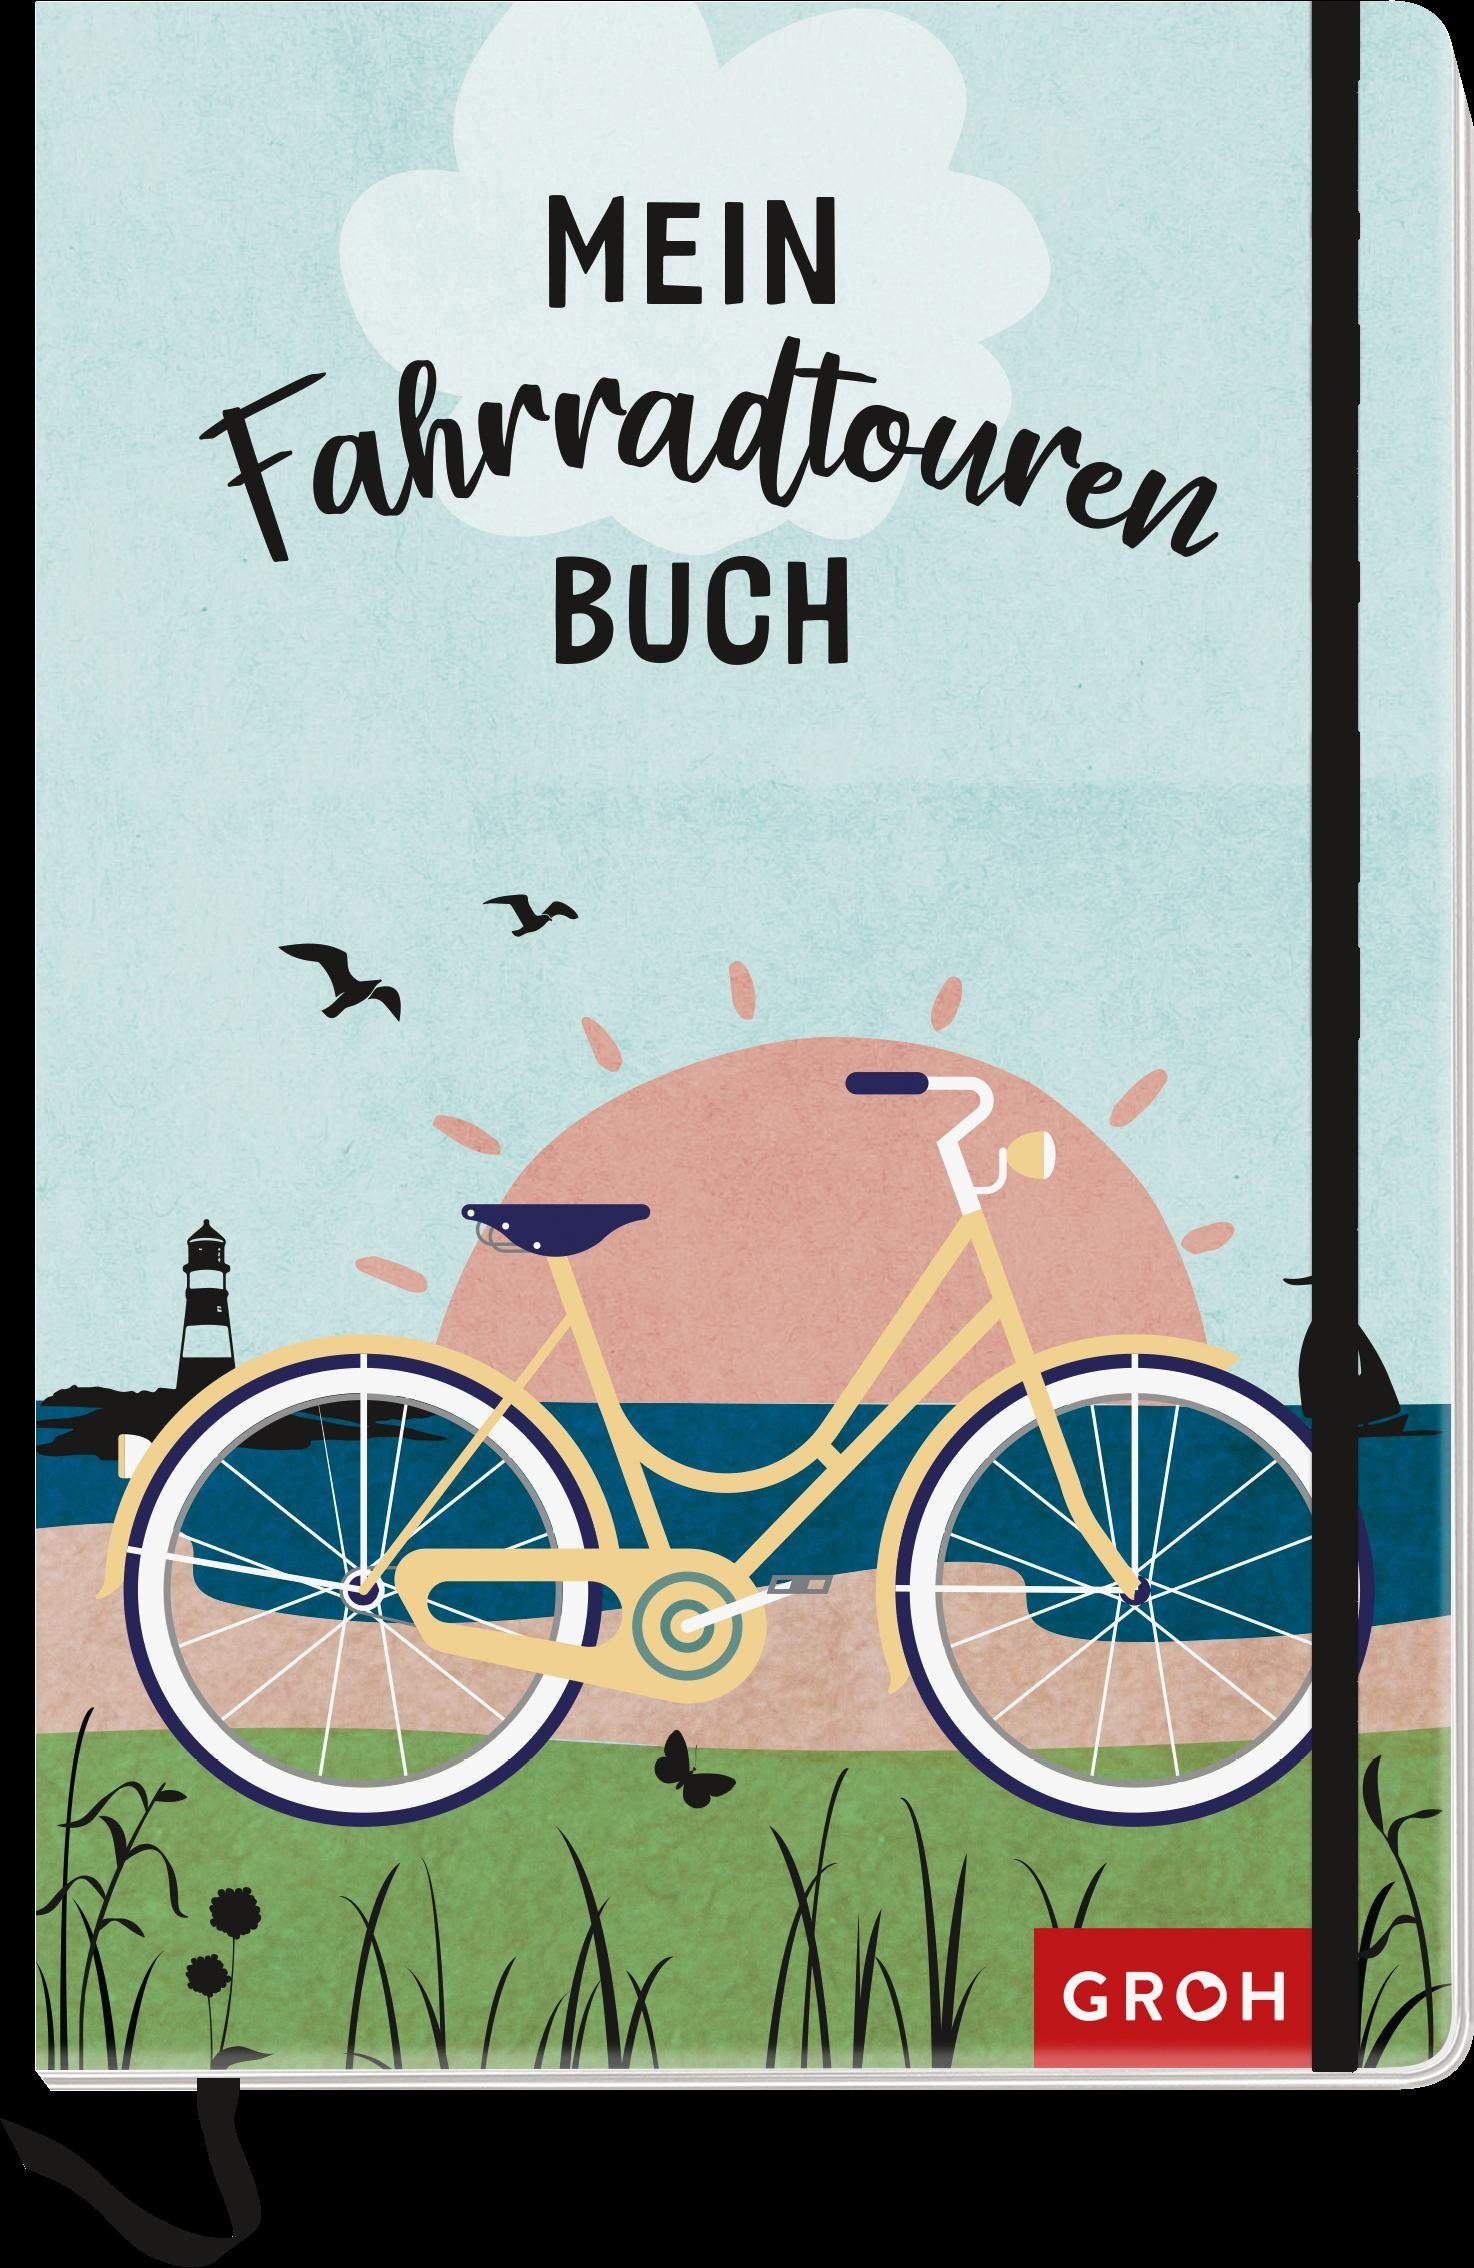 Mein Fahrradtouren-Buch Verlag Notizbuch groh (maritim)